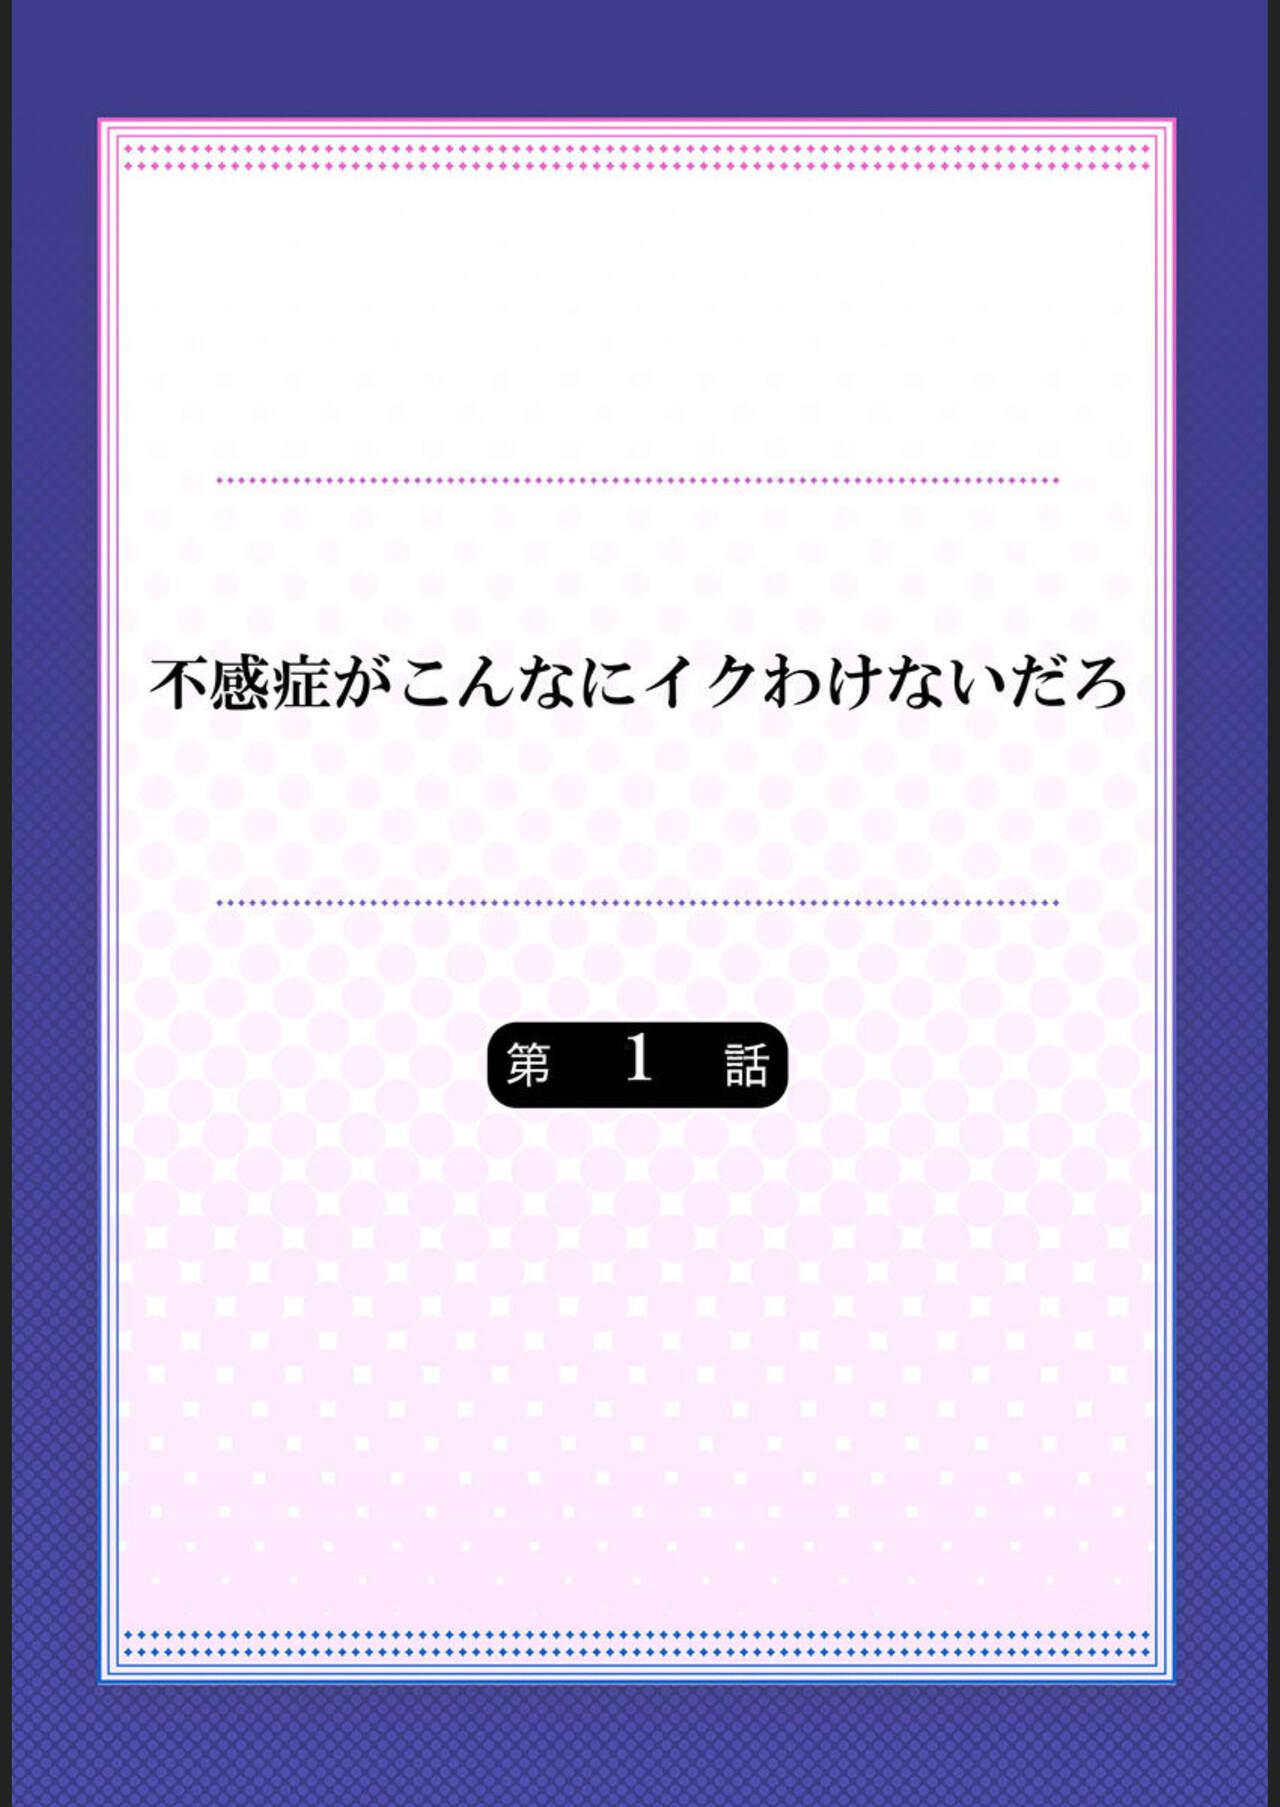 Chica Fukanshou ga Konnani Iku Wakenai daro 1 Classroom - Page 2